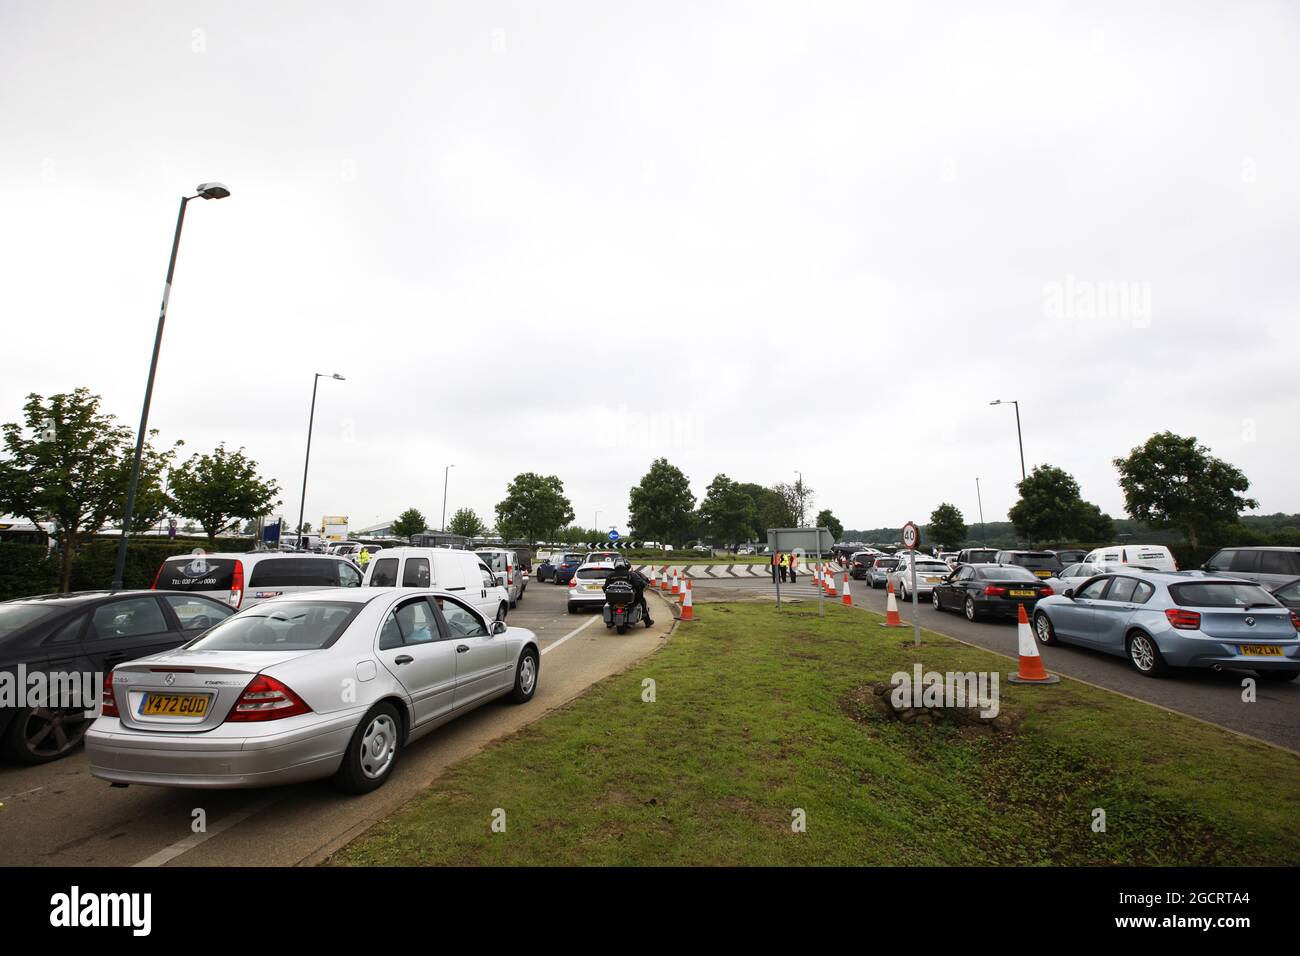 Colas para los aparcamientos. Gran Premio de Gran Bretaña, domingo 8th de julio de 2012. Silverstone, Inglaterra. Foto de stock